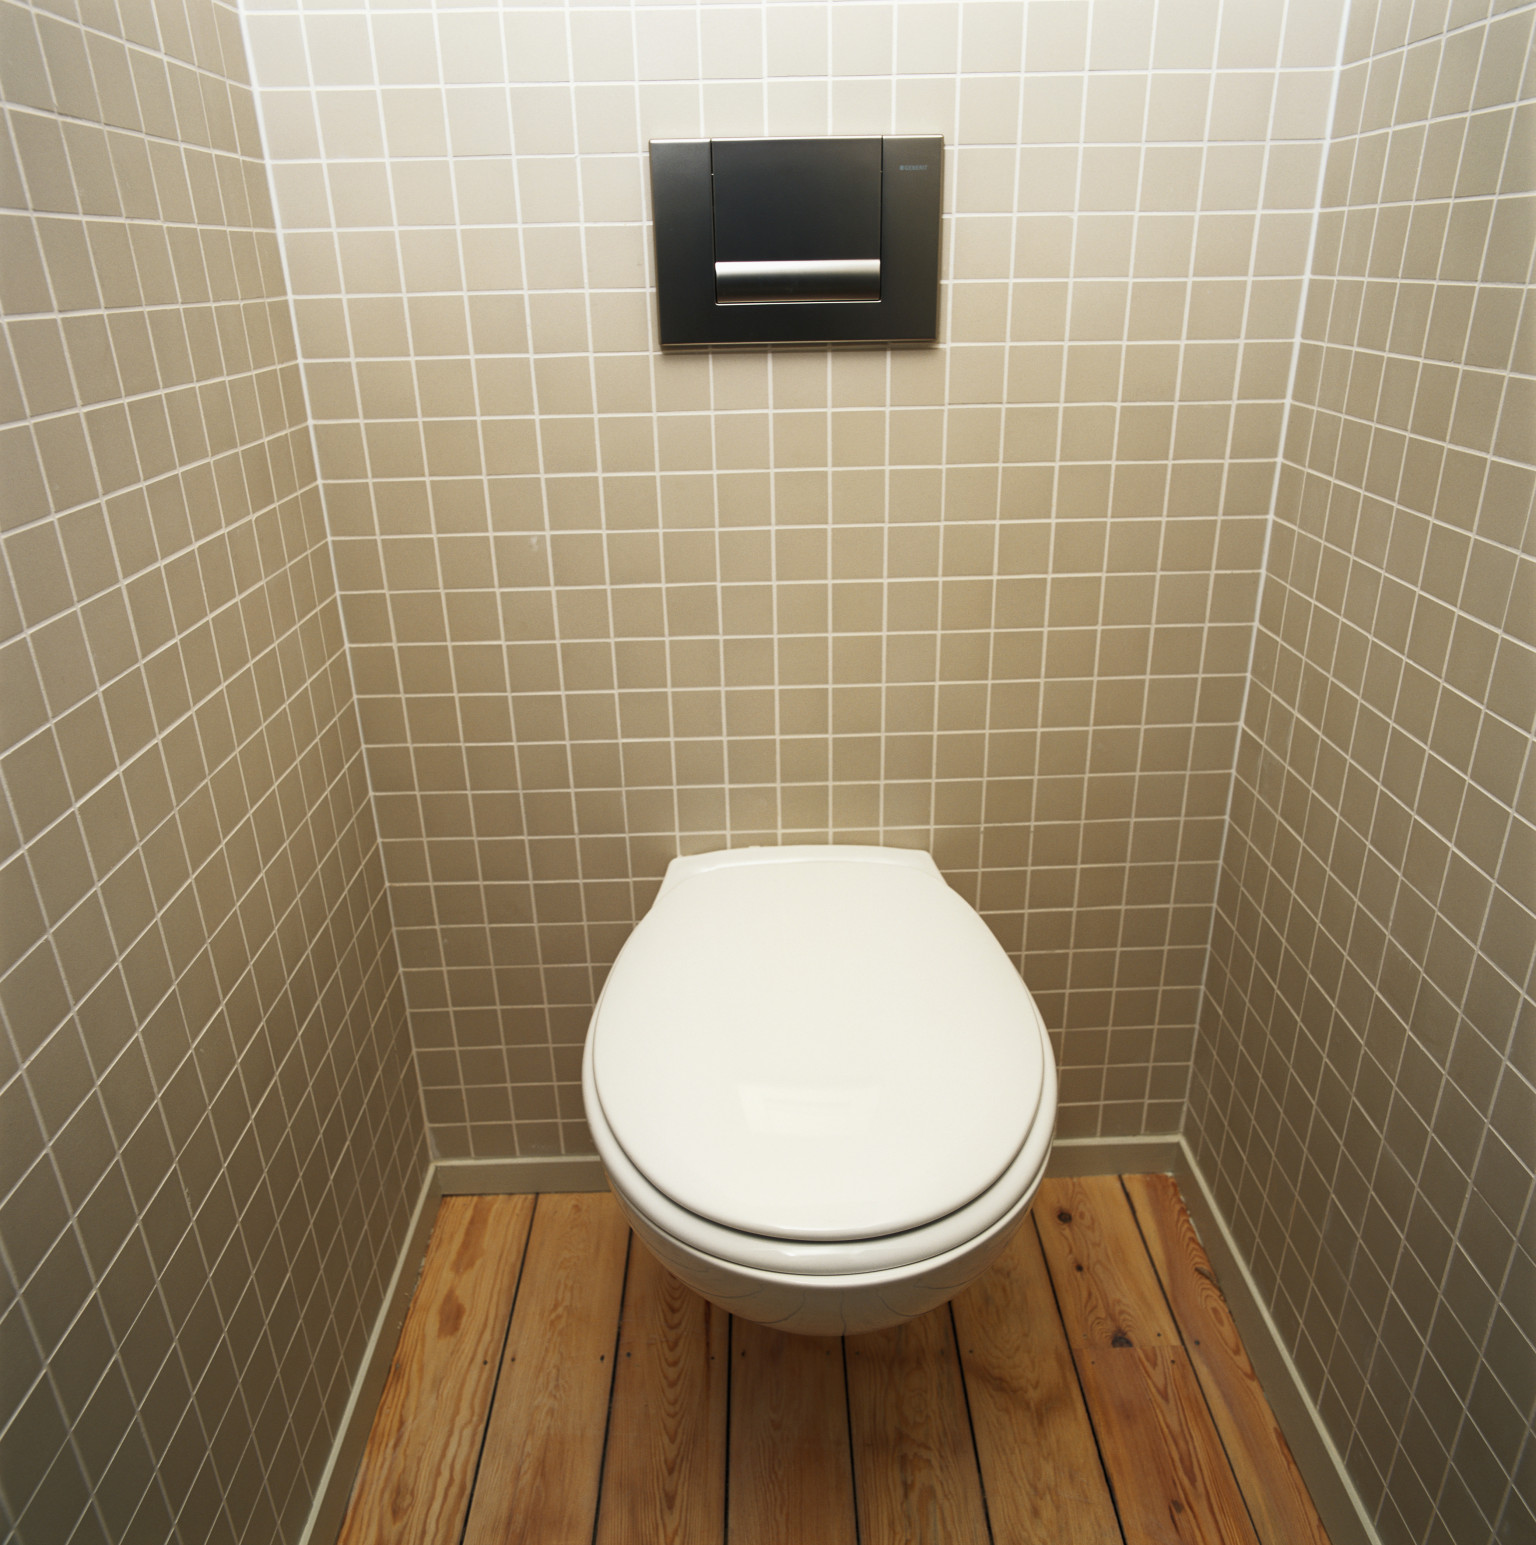  в туалетной комнате фото » Современный дизайн на Vip-1gl